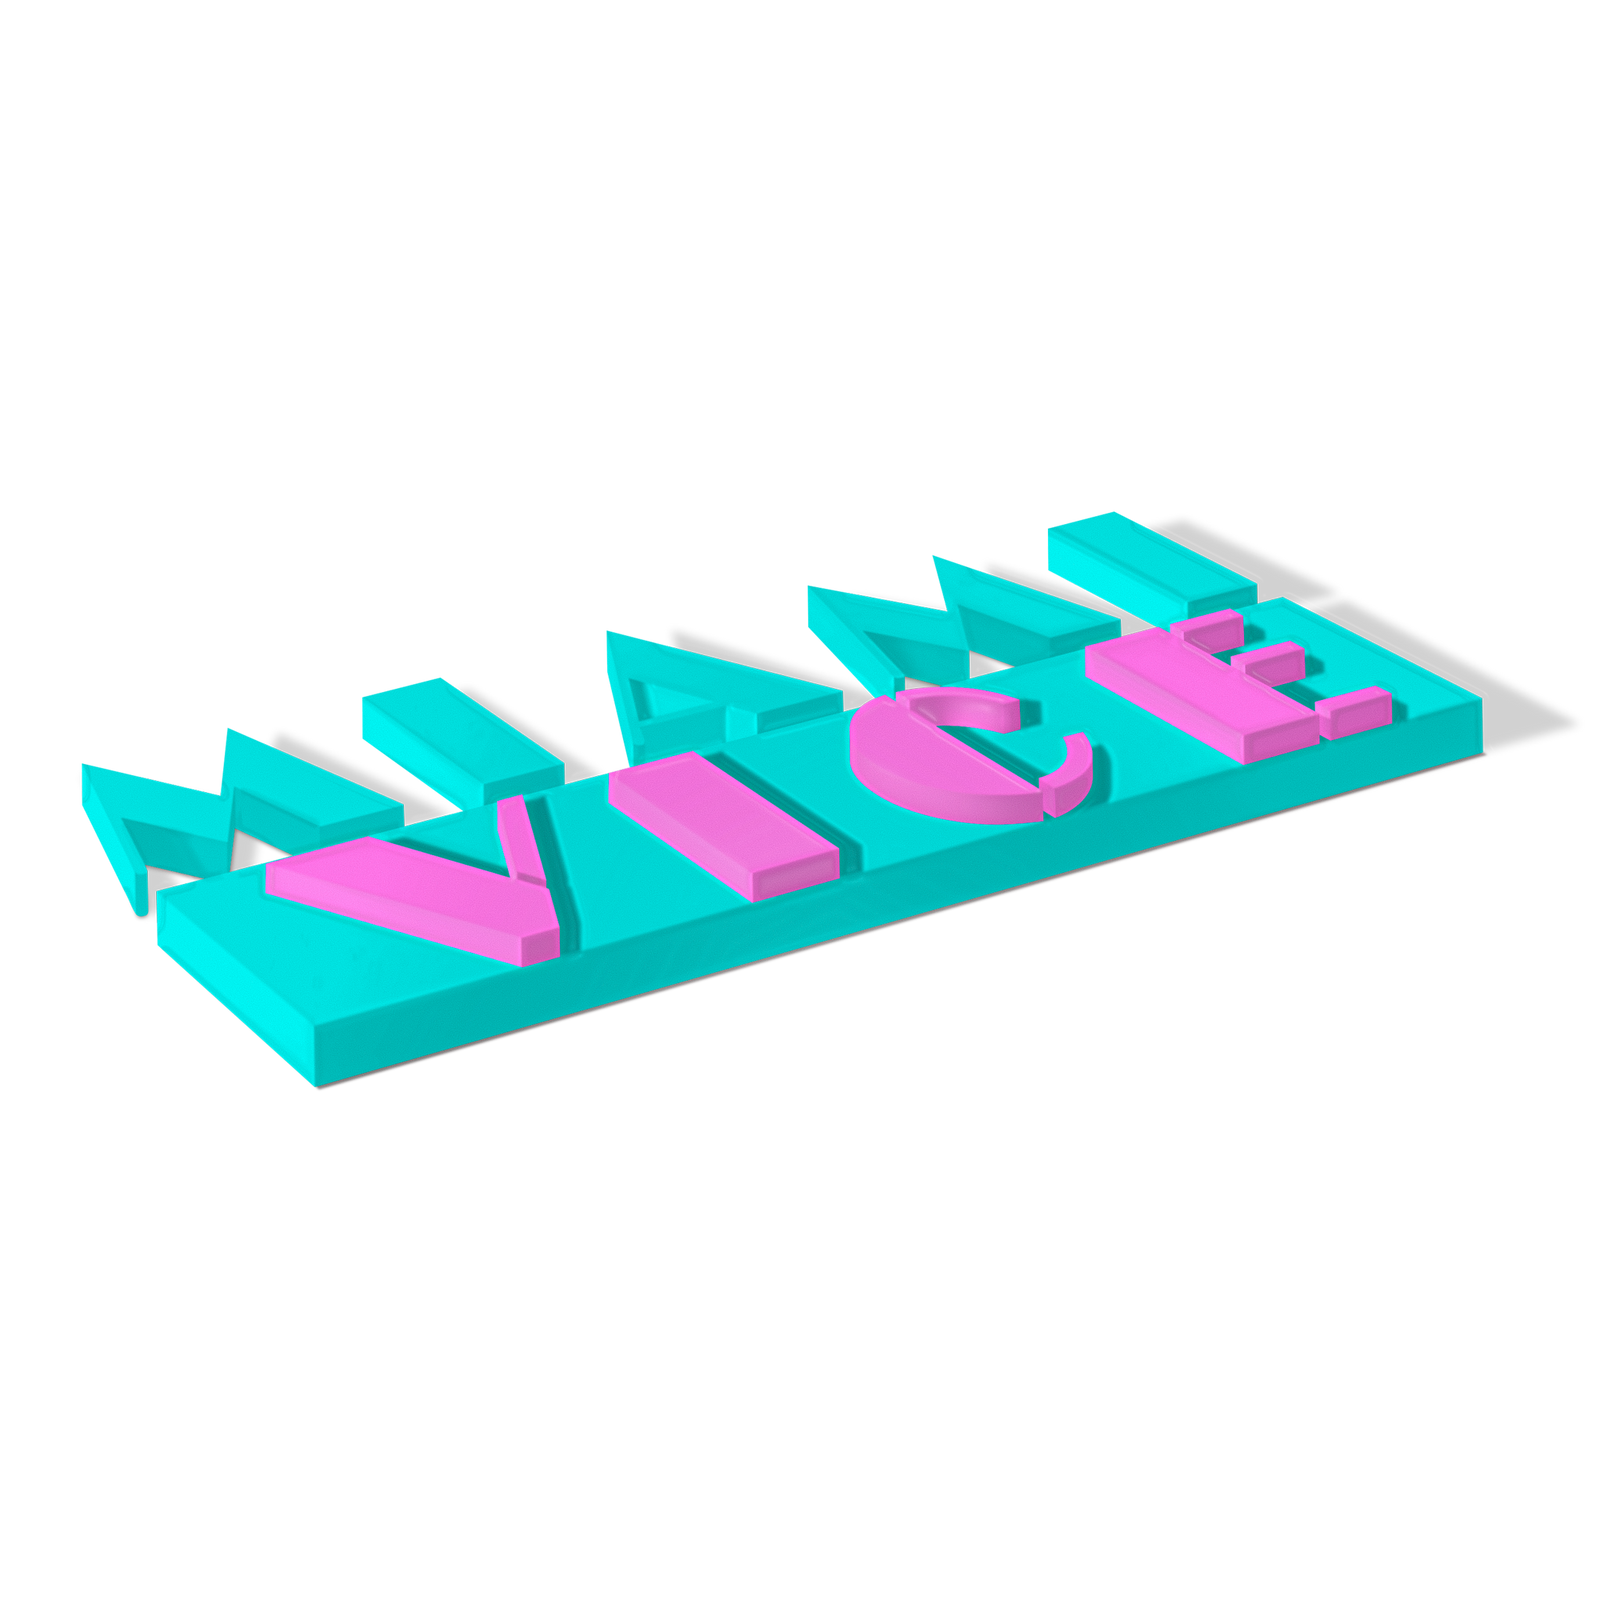 Miami Vice logo.